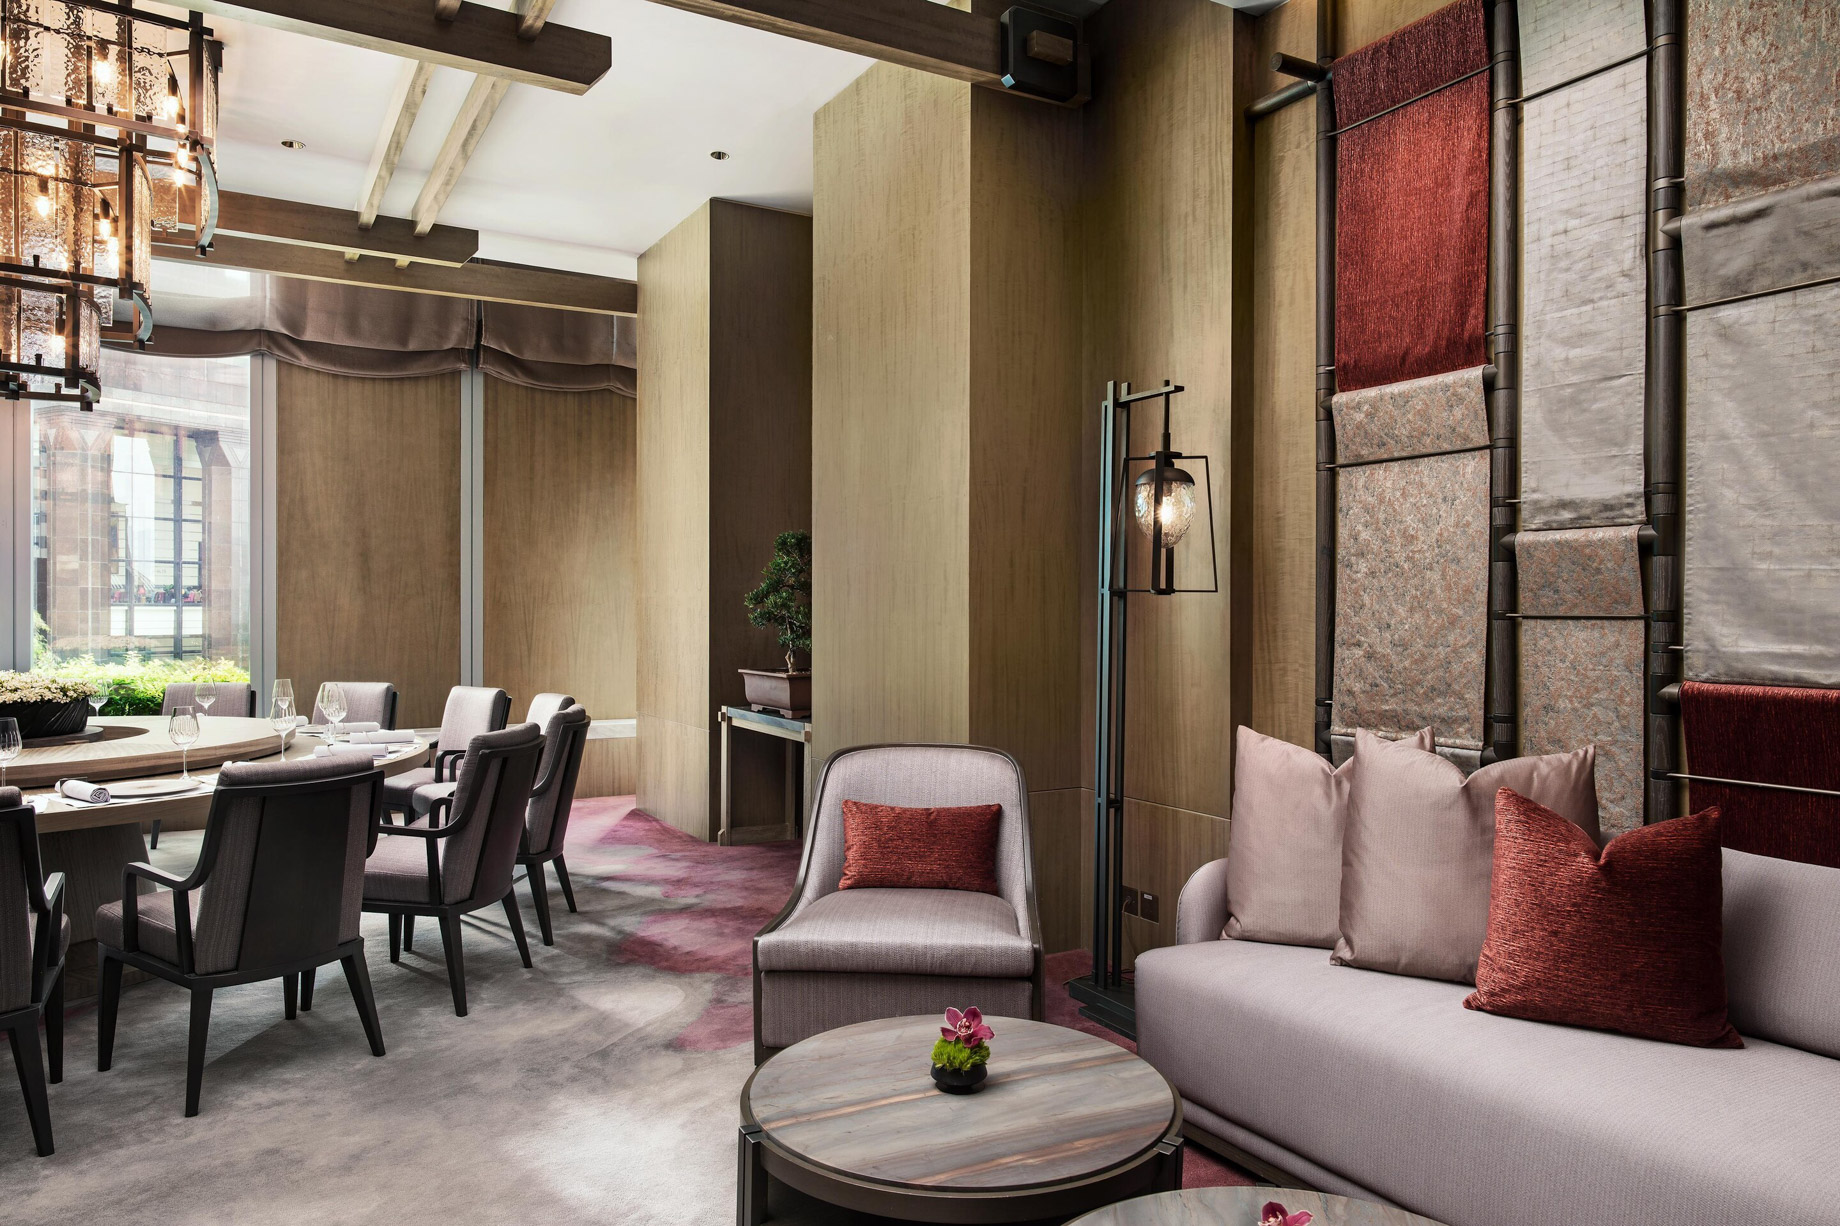 The St. Regis Hong Kong Hotel – Wan Chai, Hong Kong – Rùn Style